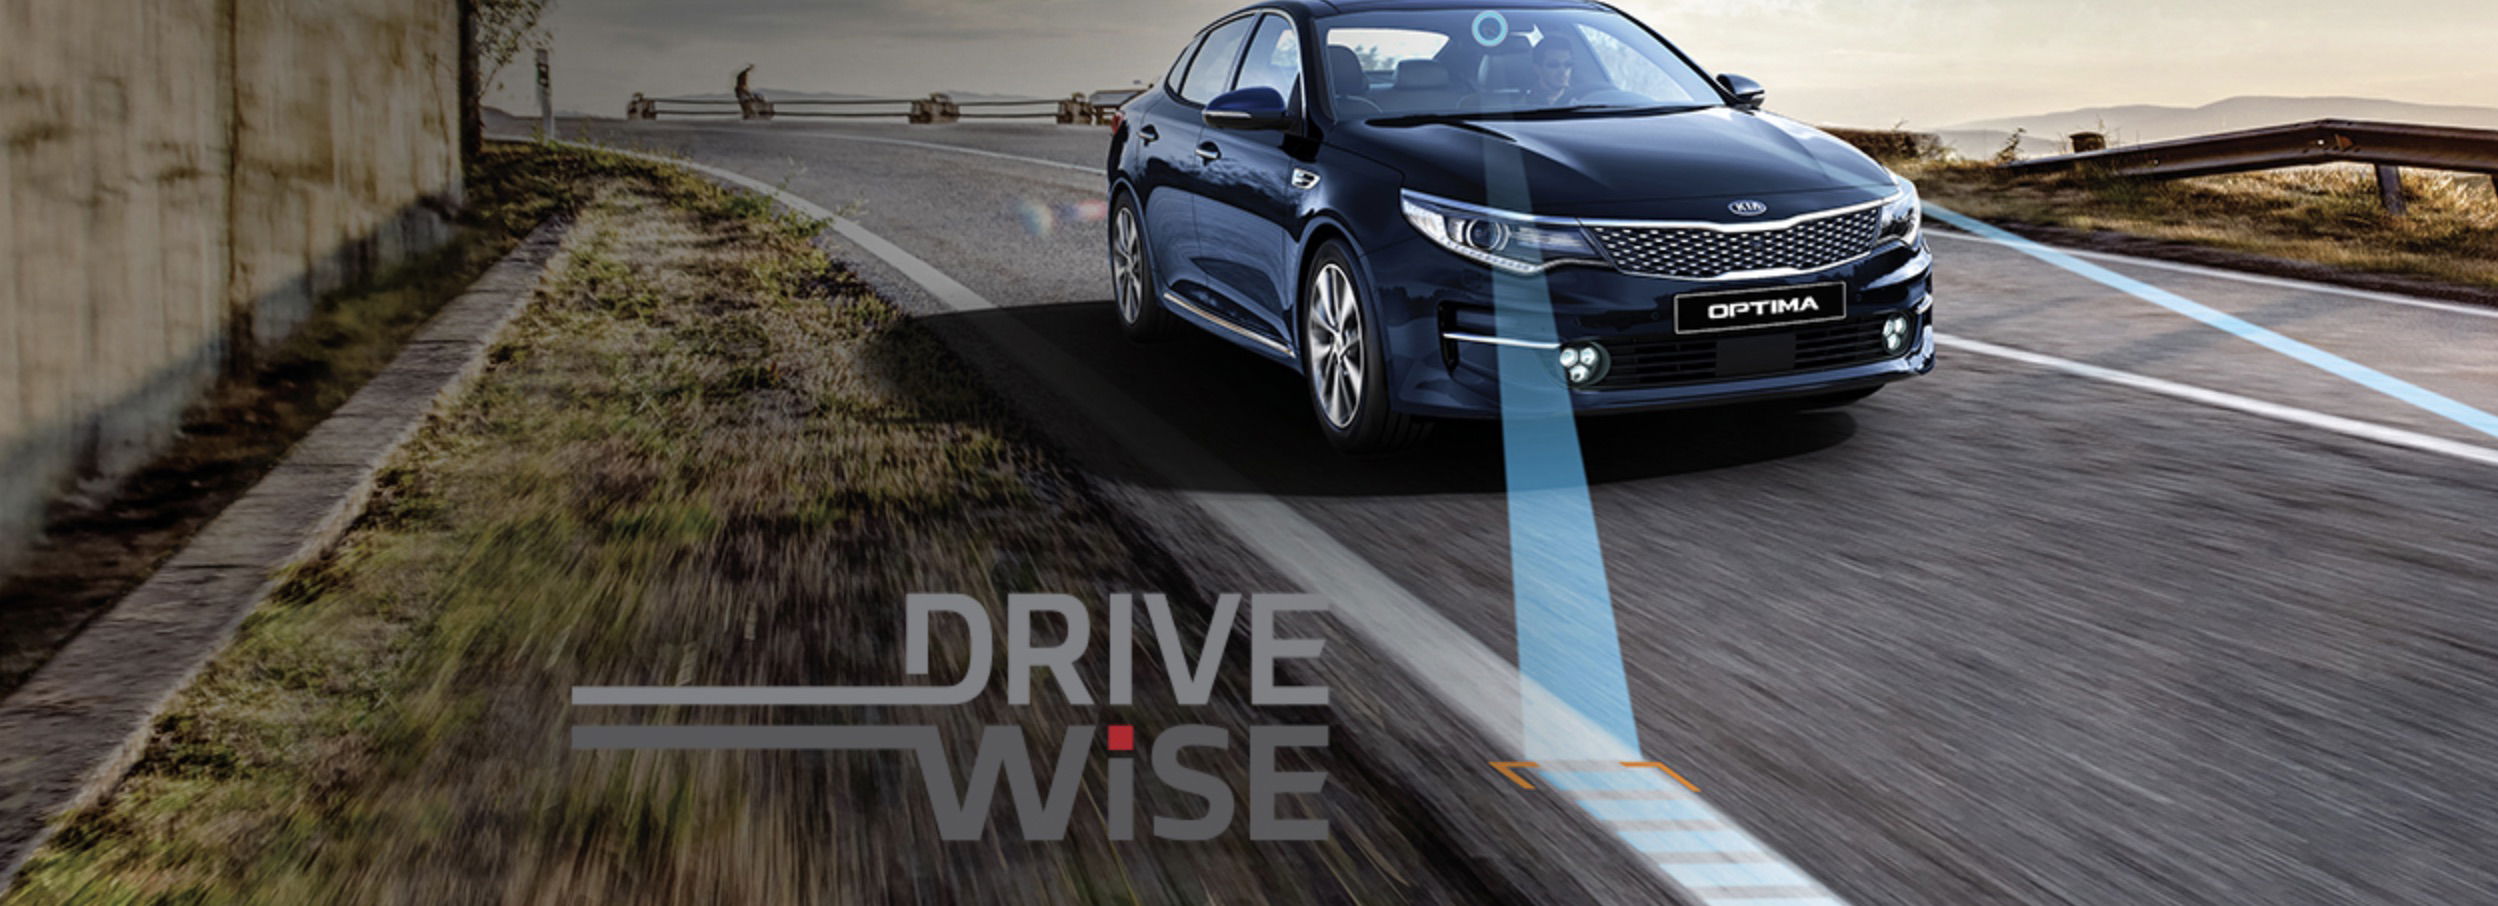 Kia DriveWise smart cruise control.